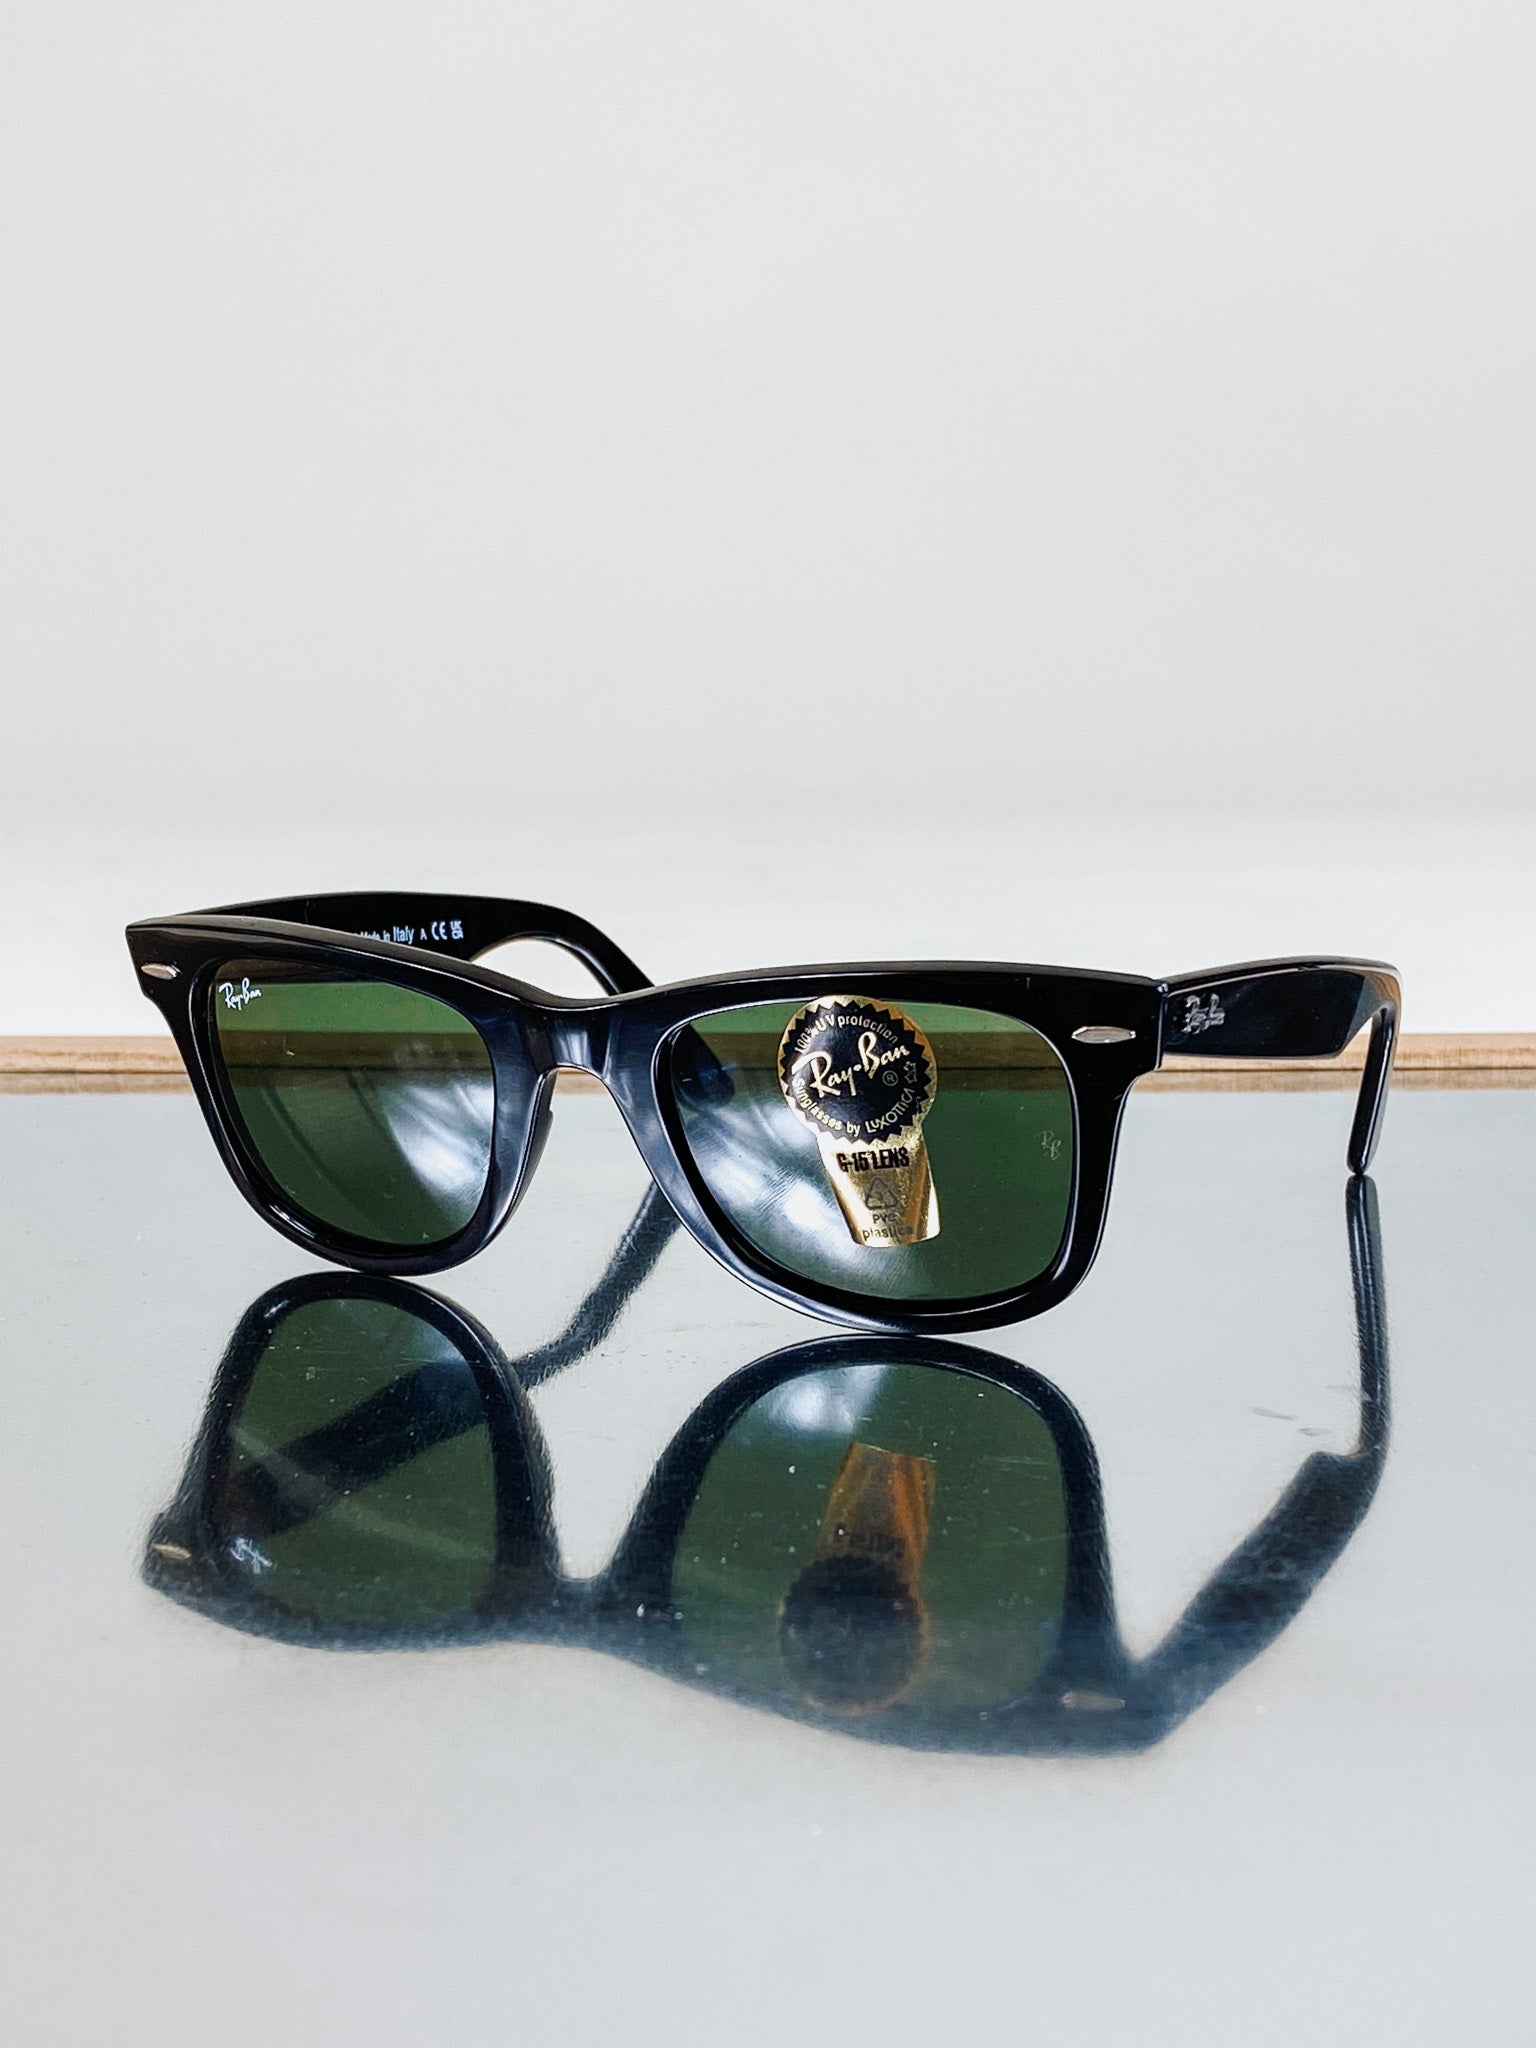 Ray-Ban Original Wayfarer Sunglasses Black/Crystal Green at